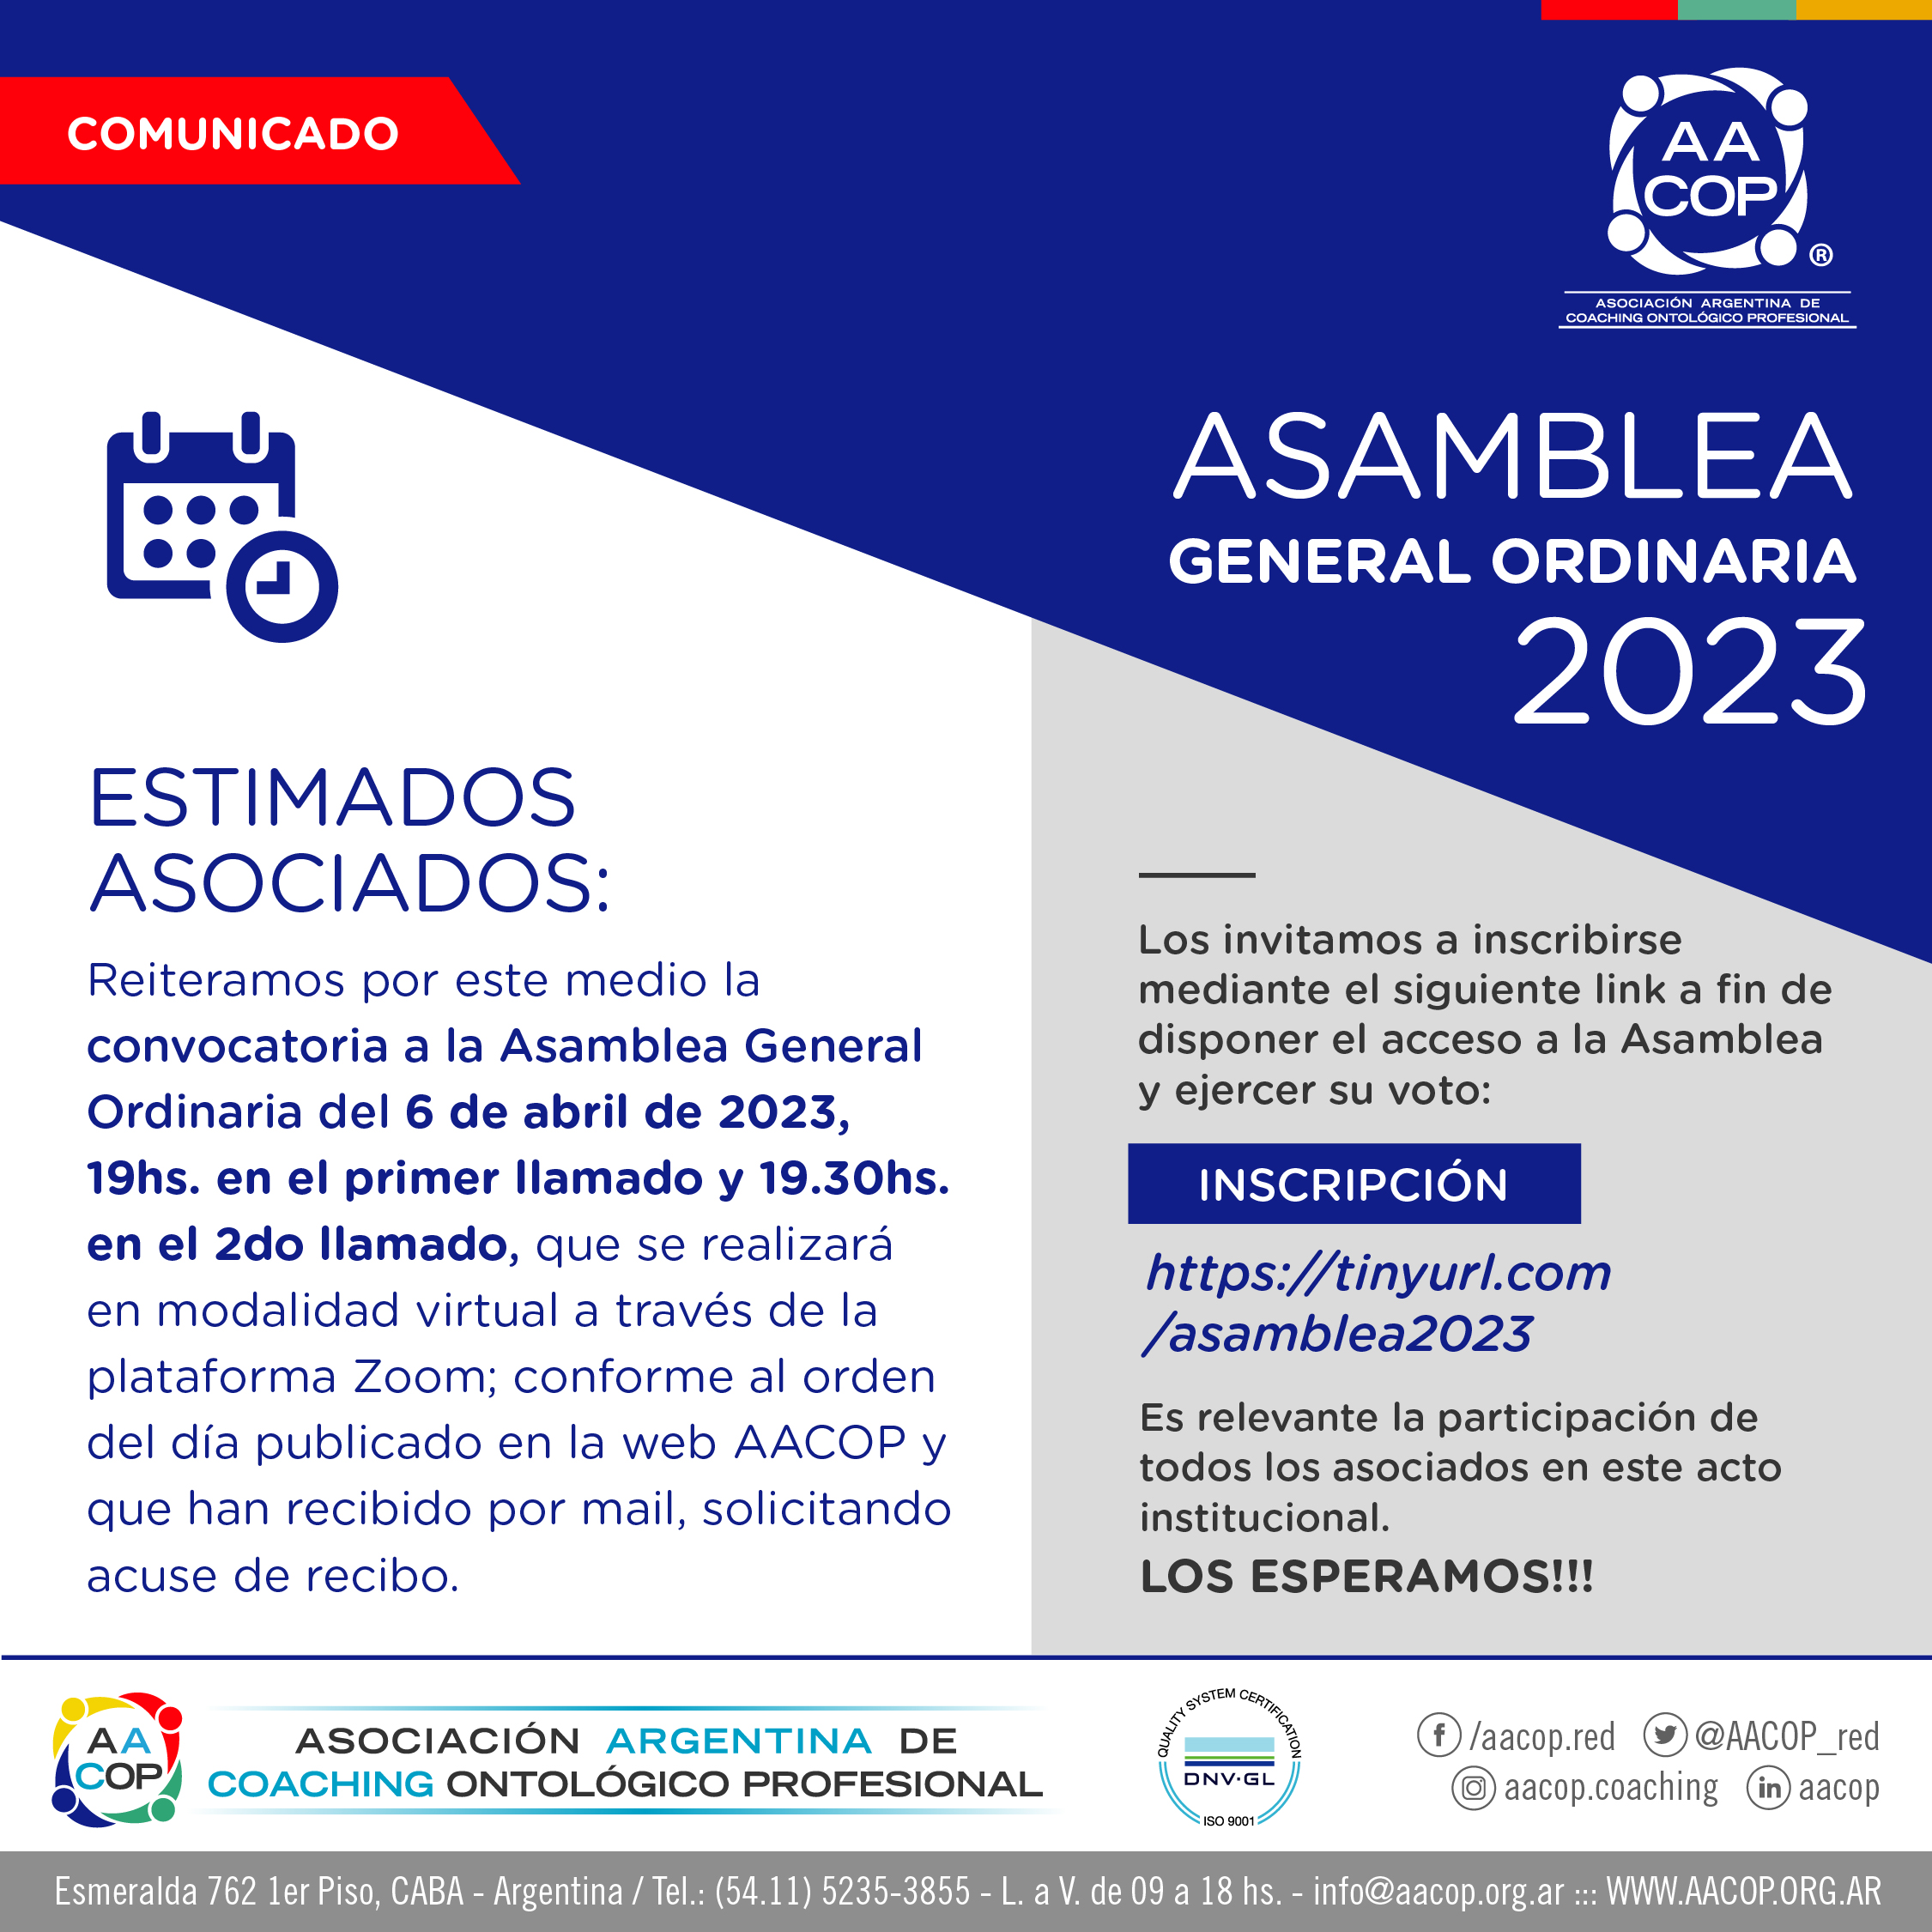 ASAMBLEA GENERAL ORDINARIA 2023 | imagen